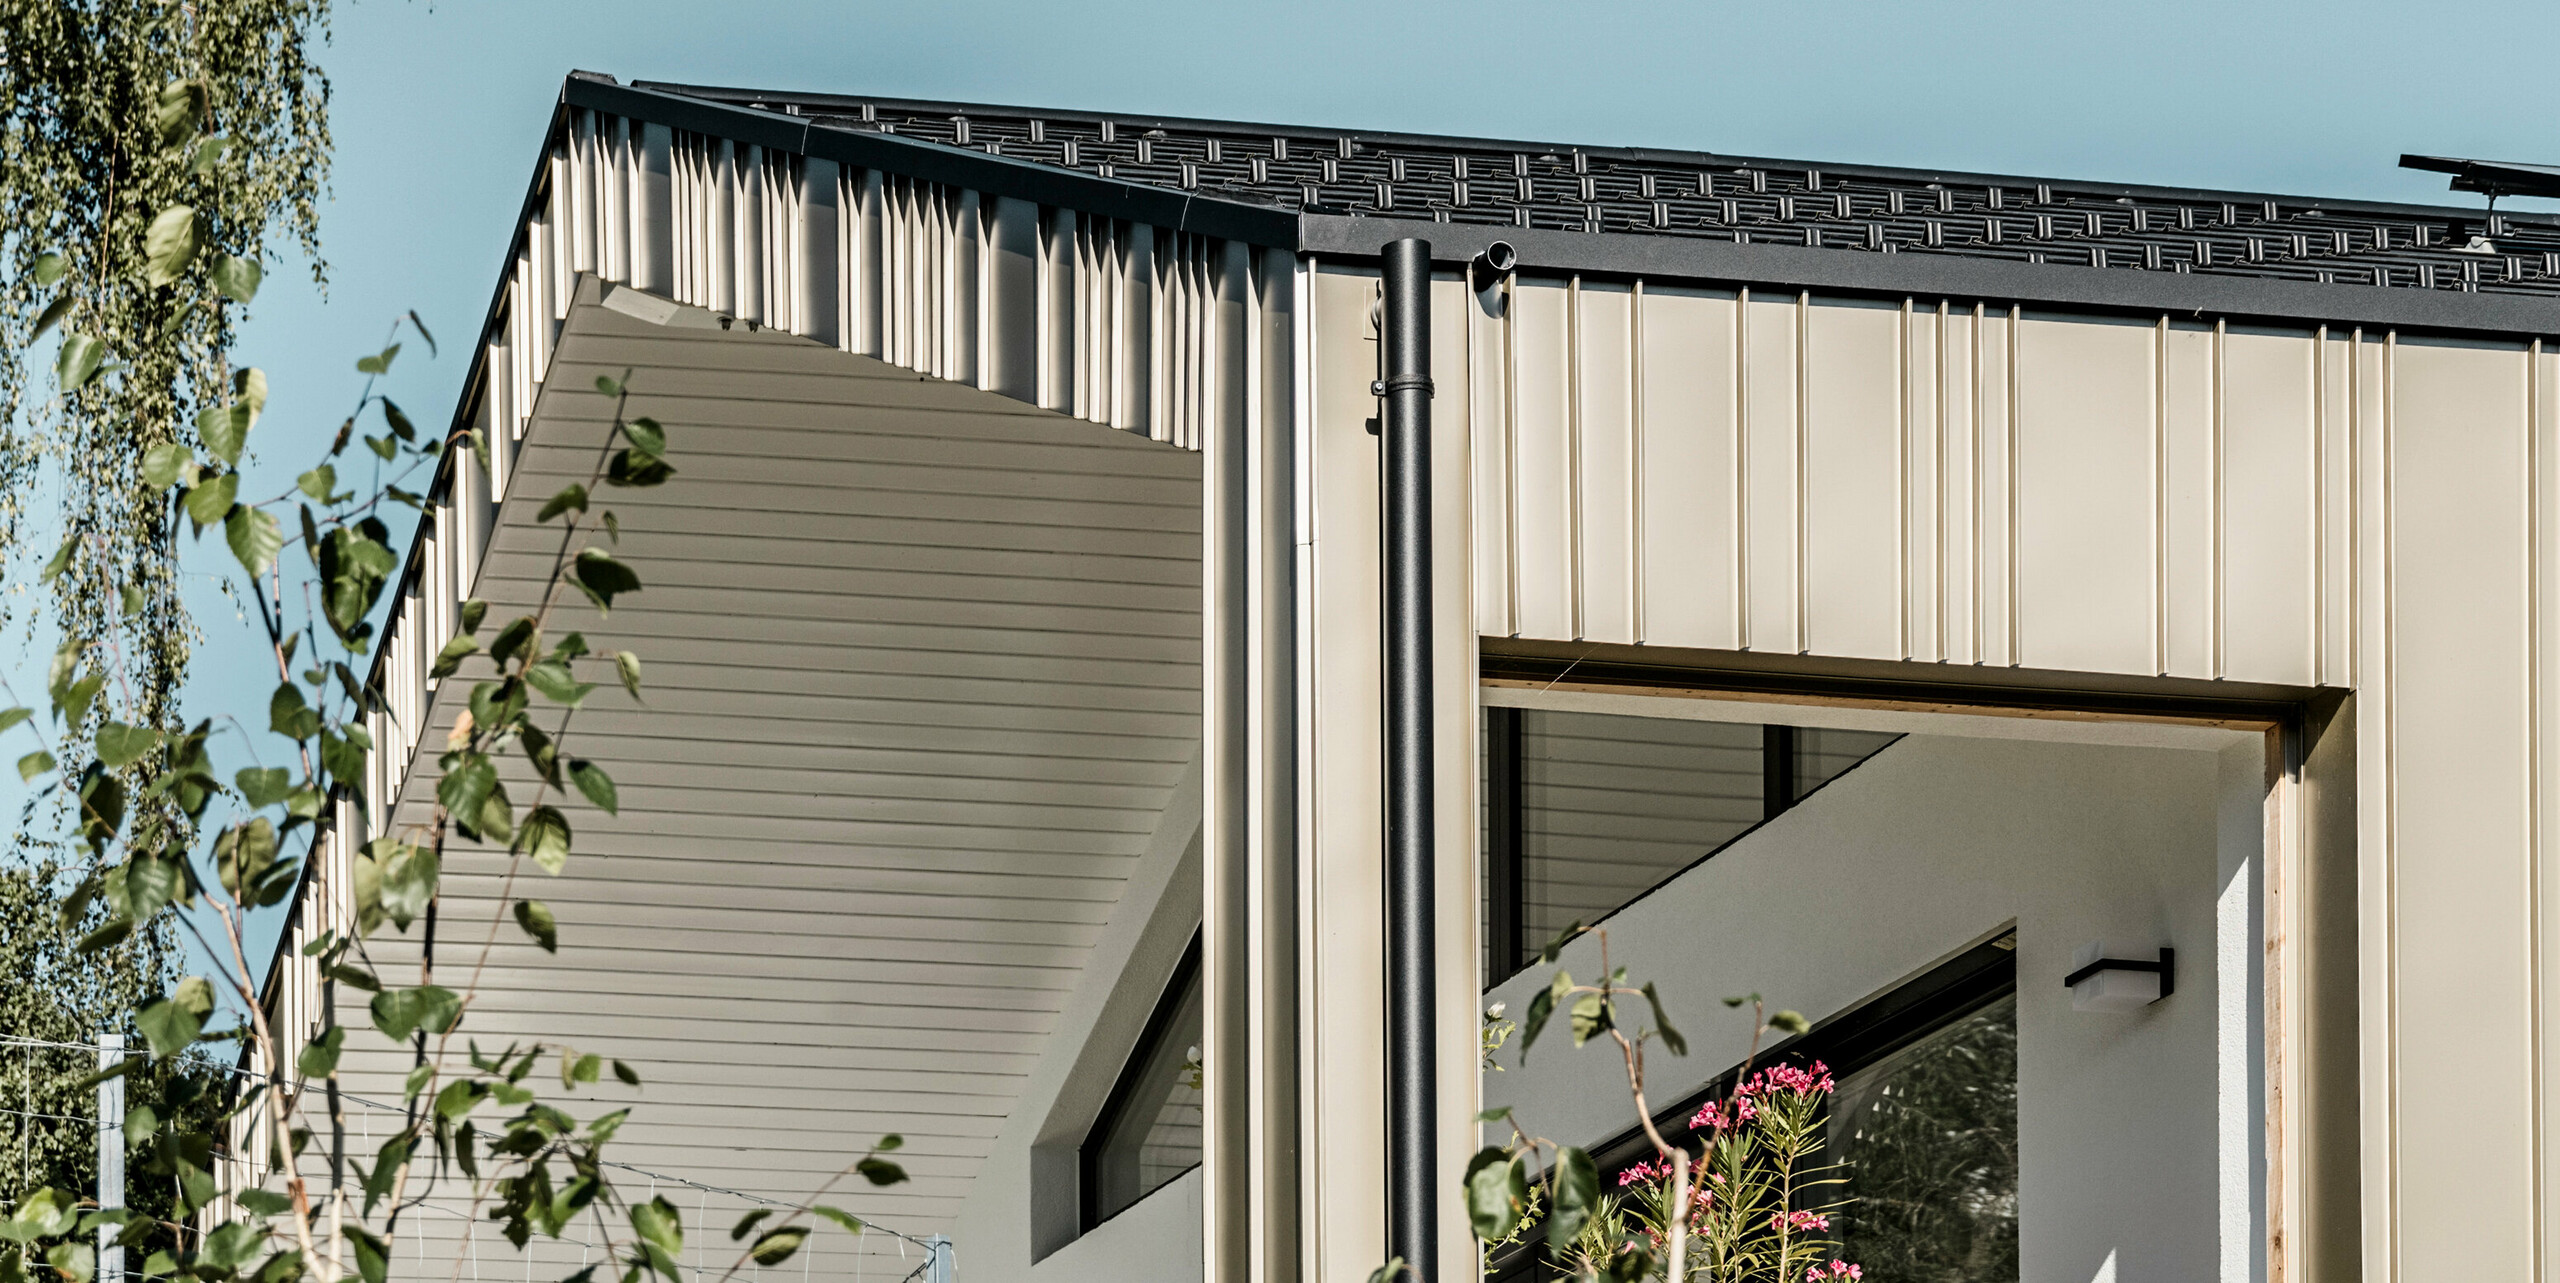 Moderne Architektur mit einer PREFA Aluminiumfassade in Lichtbronze. Abgerundet wird das Erscheinungsbild durch eine anthrazitfarbene Dachkante und eine hochwertige PREFA Dachentwässerung. Die vertikale Anordnung der Winkelstehfalzdeckung betont die Höhe des Gebäudes und verleiht ihm eine elegante Textur, während die harmonische Farbgebung sich nahtlos in die natürliche Umgebung einfügt. Dieses Bild zeigt die Beständigkeit und Ästhetik von PREFA Aluminiumprodukten, die für zeitgemäßes Bauen und innovatives Design stehen.